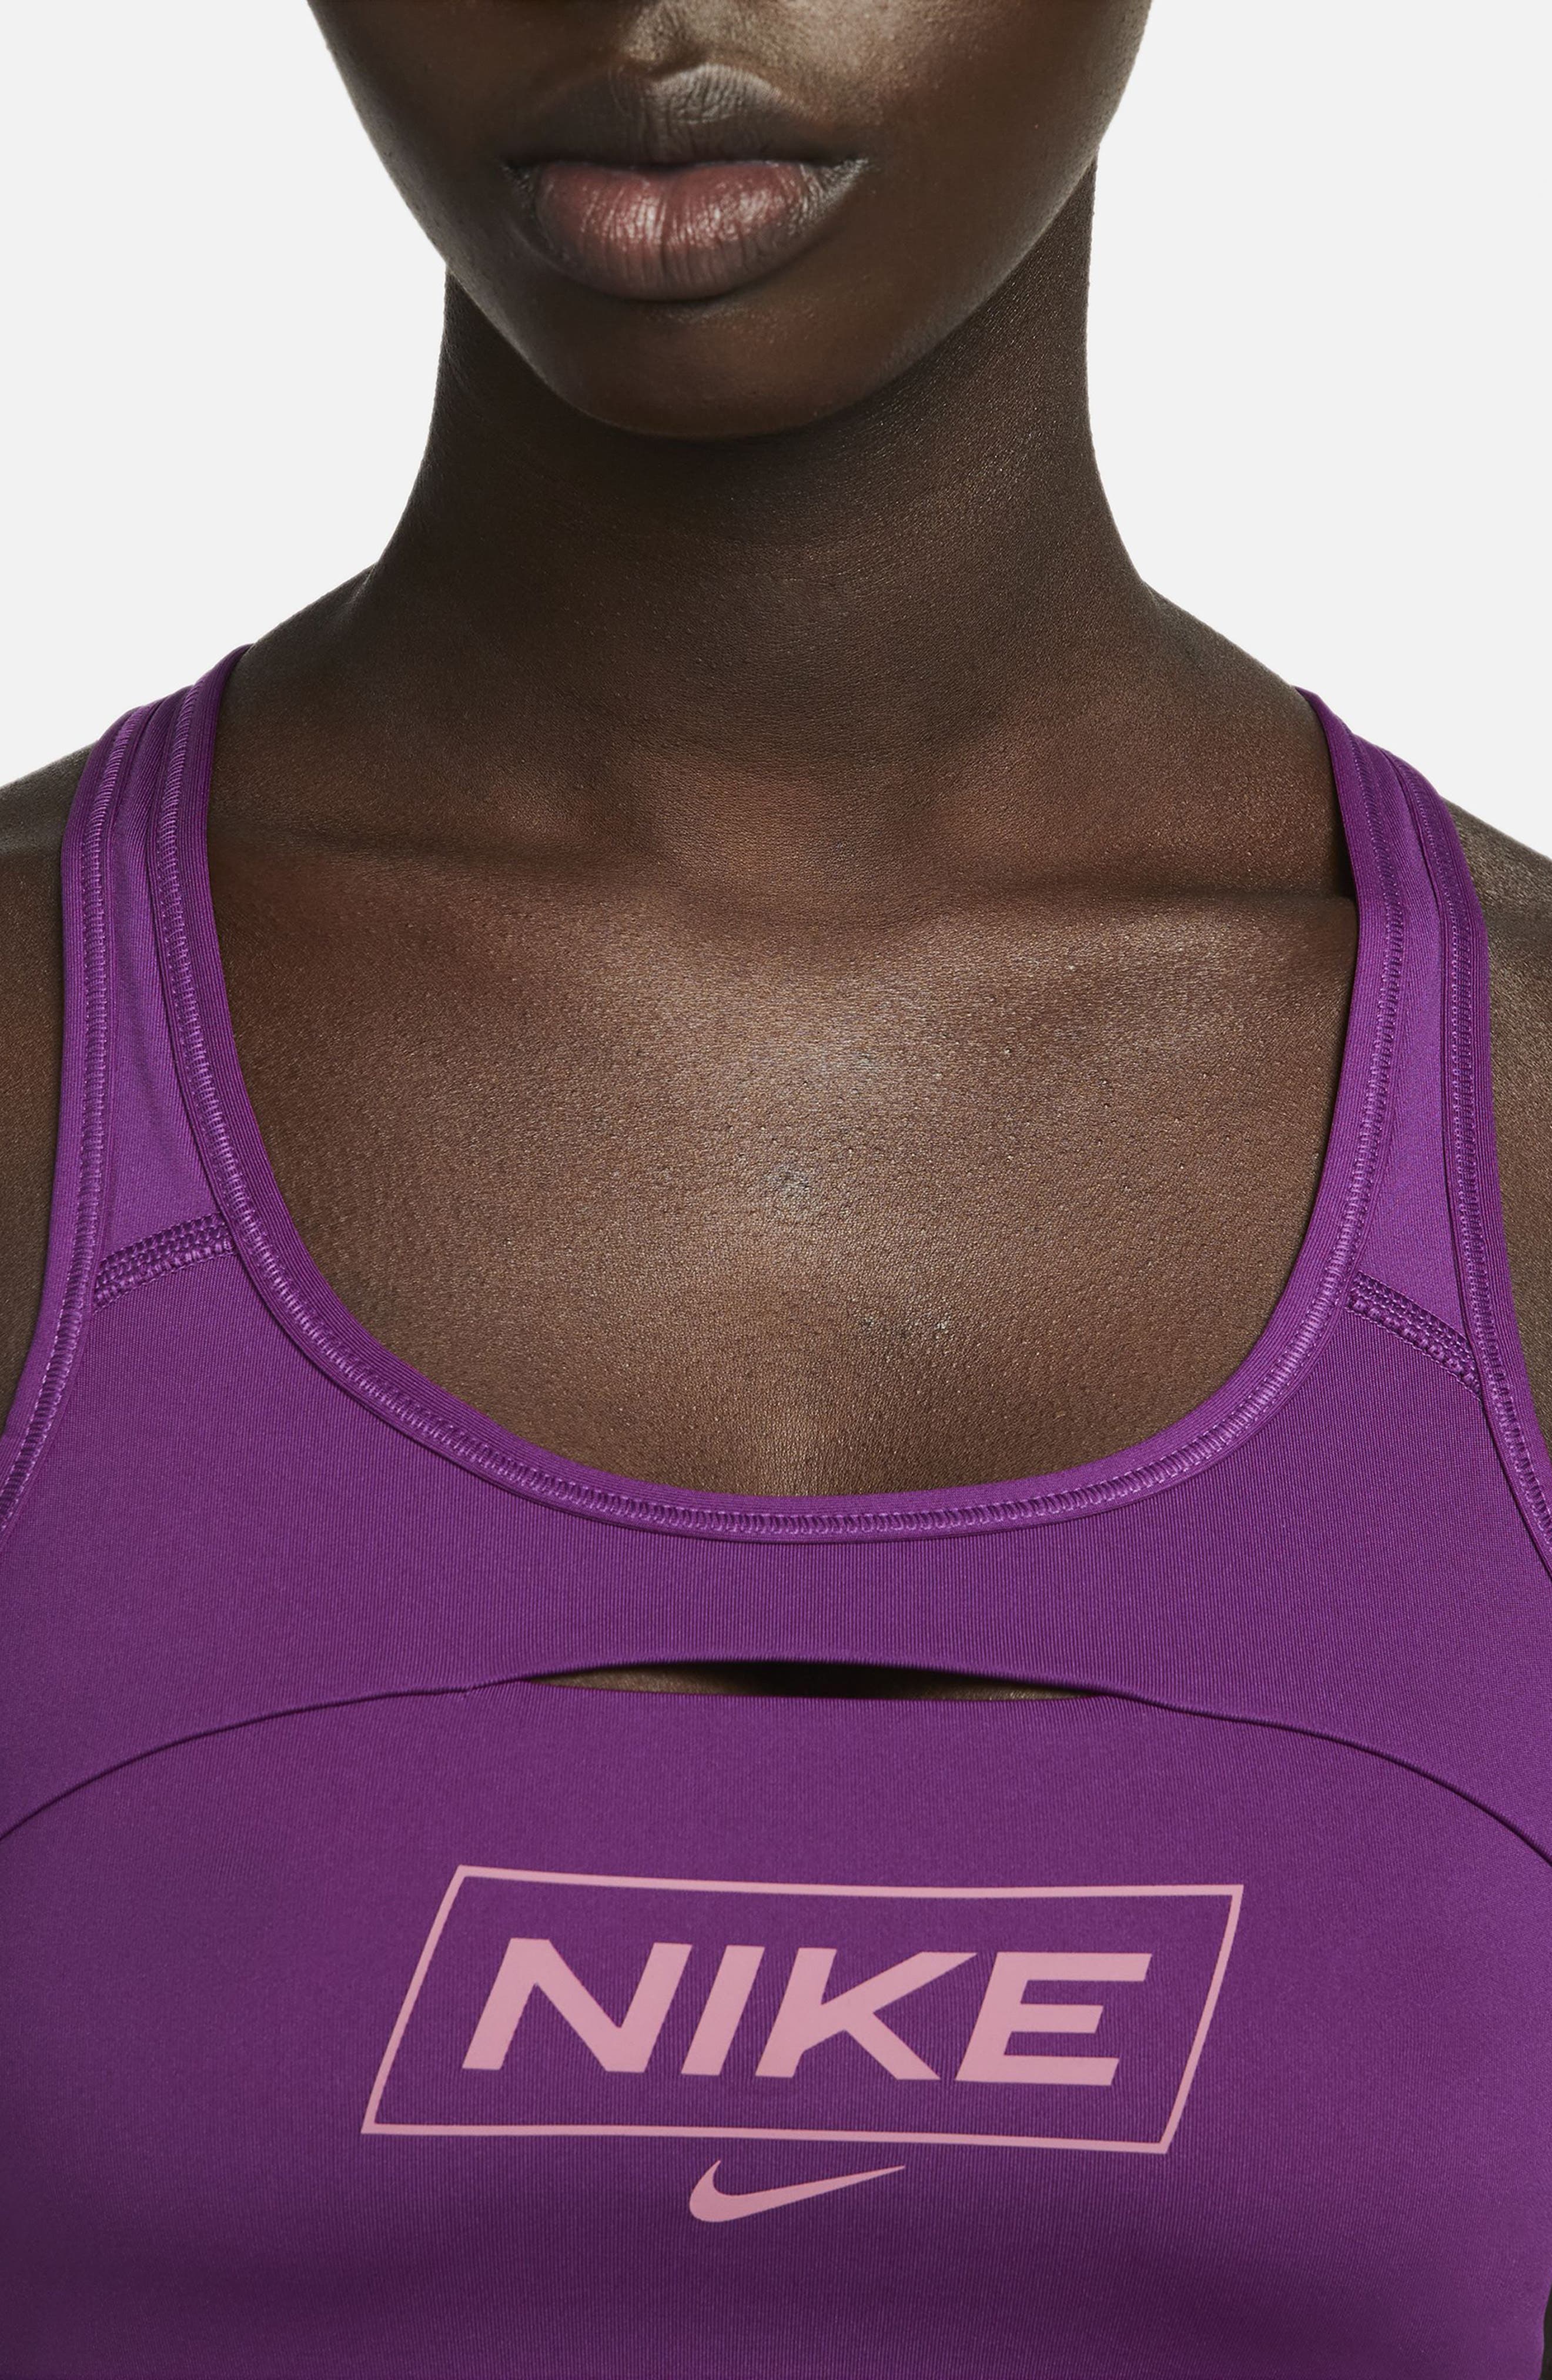 Nike Sports bra SWOOSH in purple